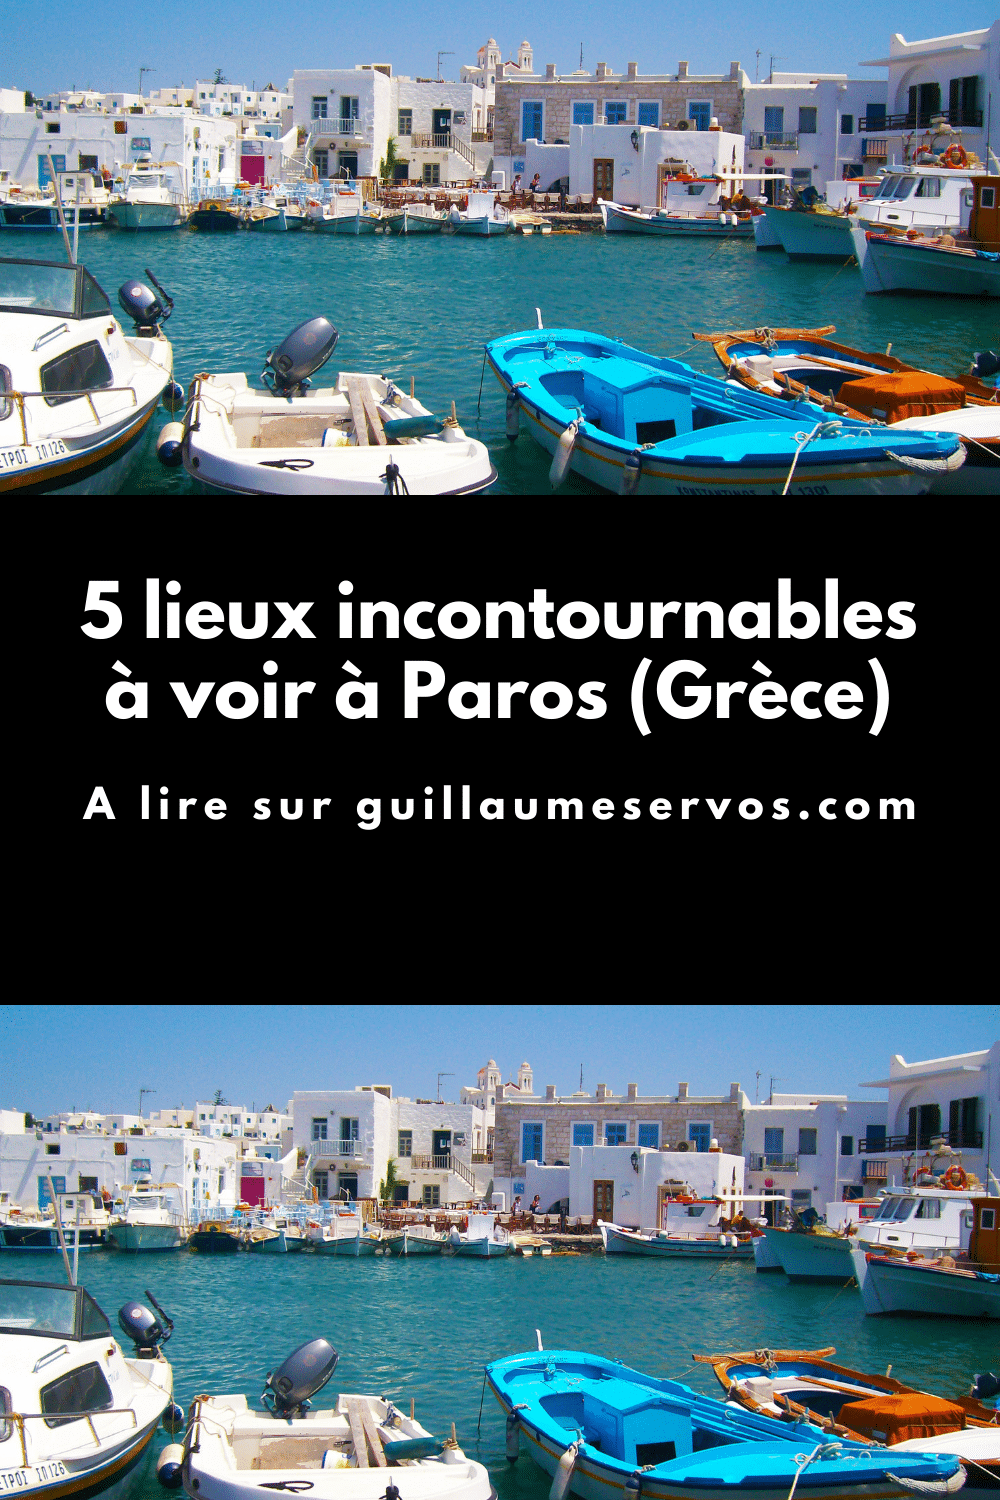 Découvre la très belle île de Paros et Antiparos dans les Cyclades en Grèce. Parikia, Naoussa, Lefkès, Pisso Livadi, Agios Giorgios.